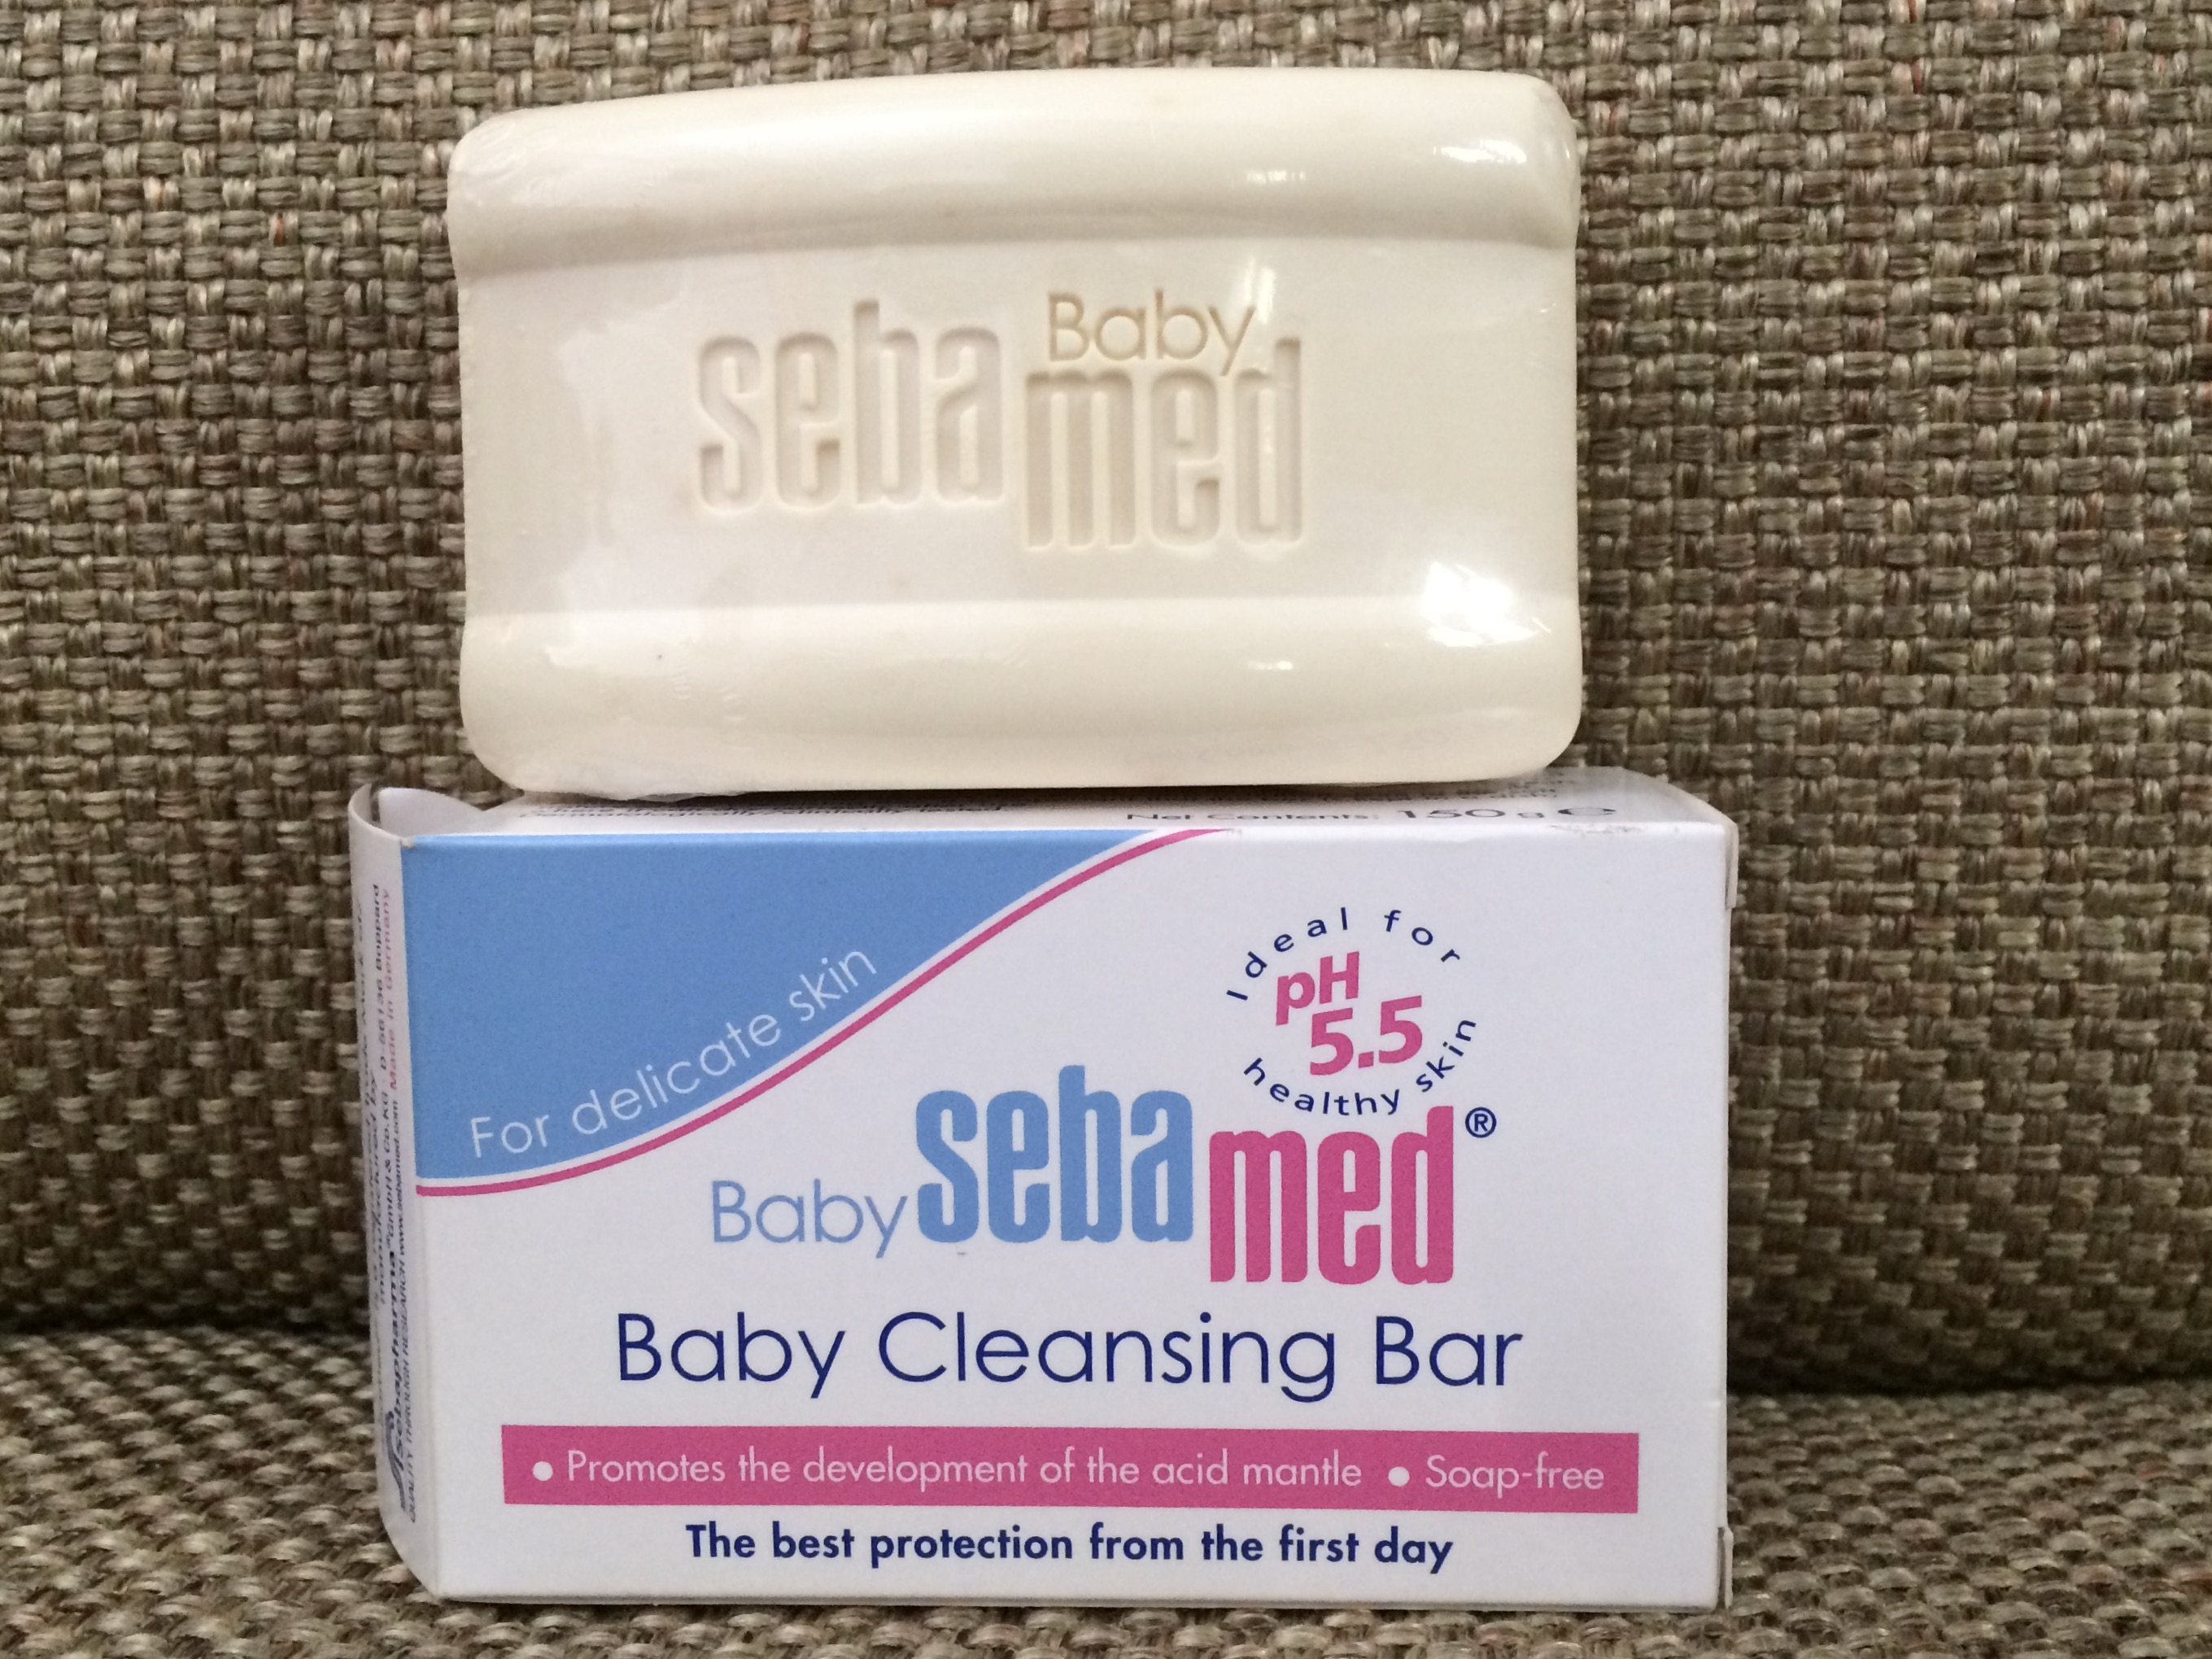 sebamed baby bar soap